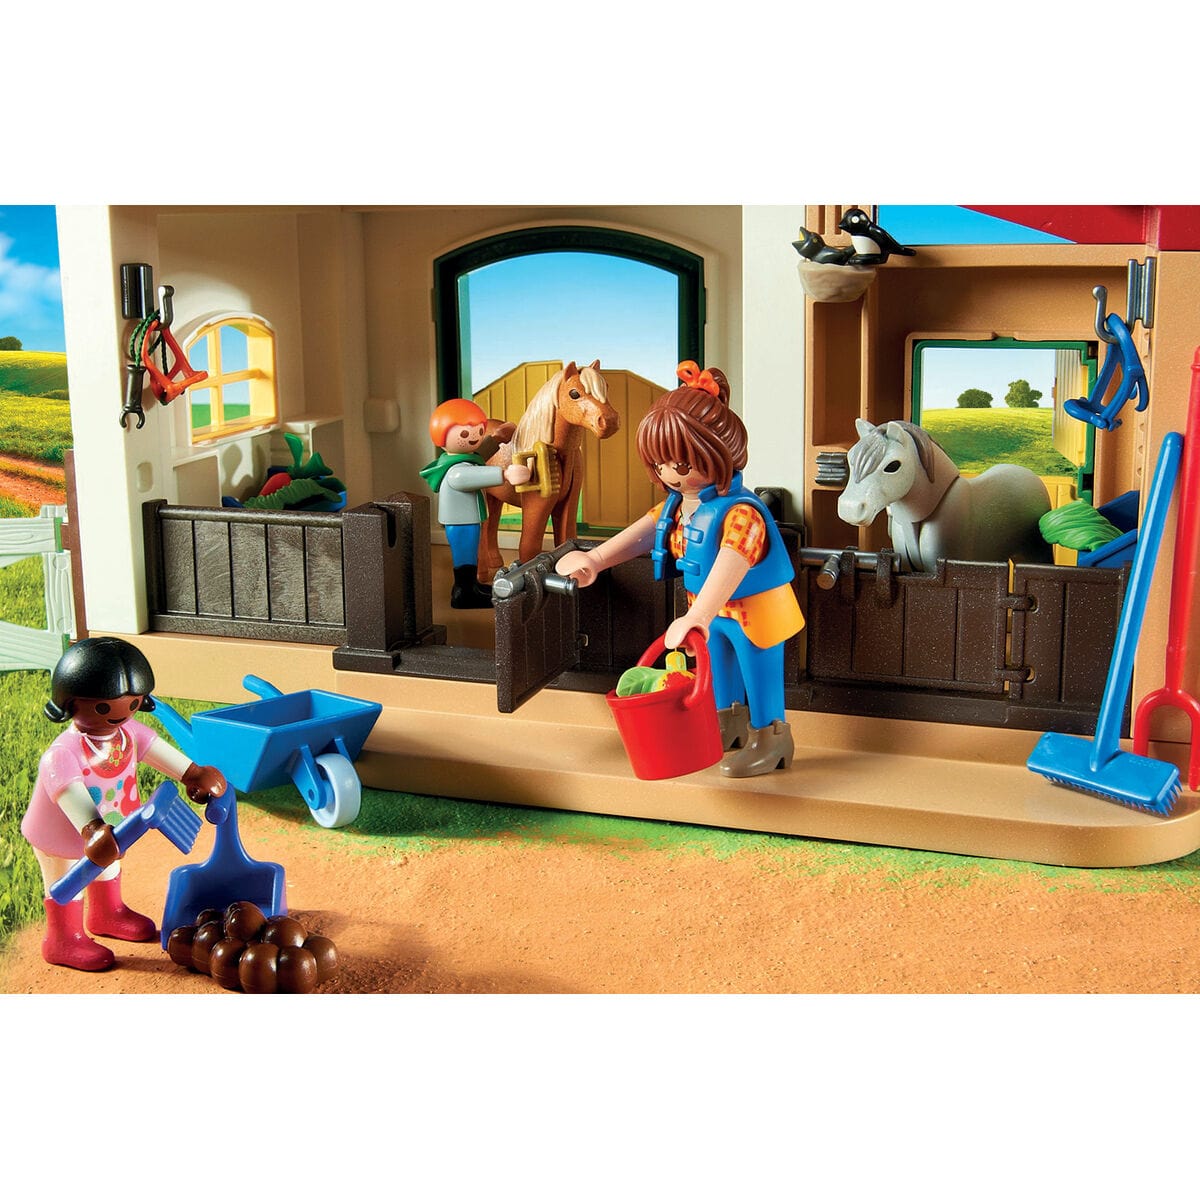 Playmobil Spielzeug | Kostüme > Spielzeug und Spiele > Weiteres spielzeug Playset Playmobil 6927 Bauernhof Pony